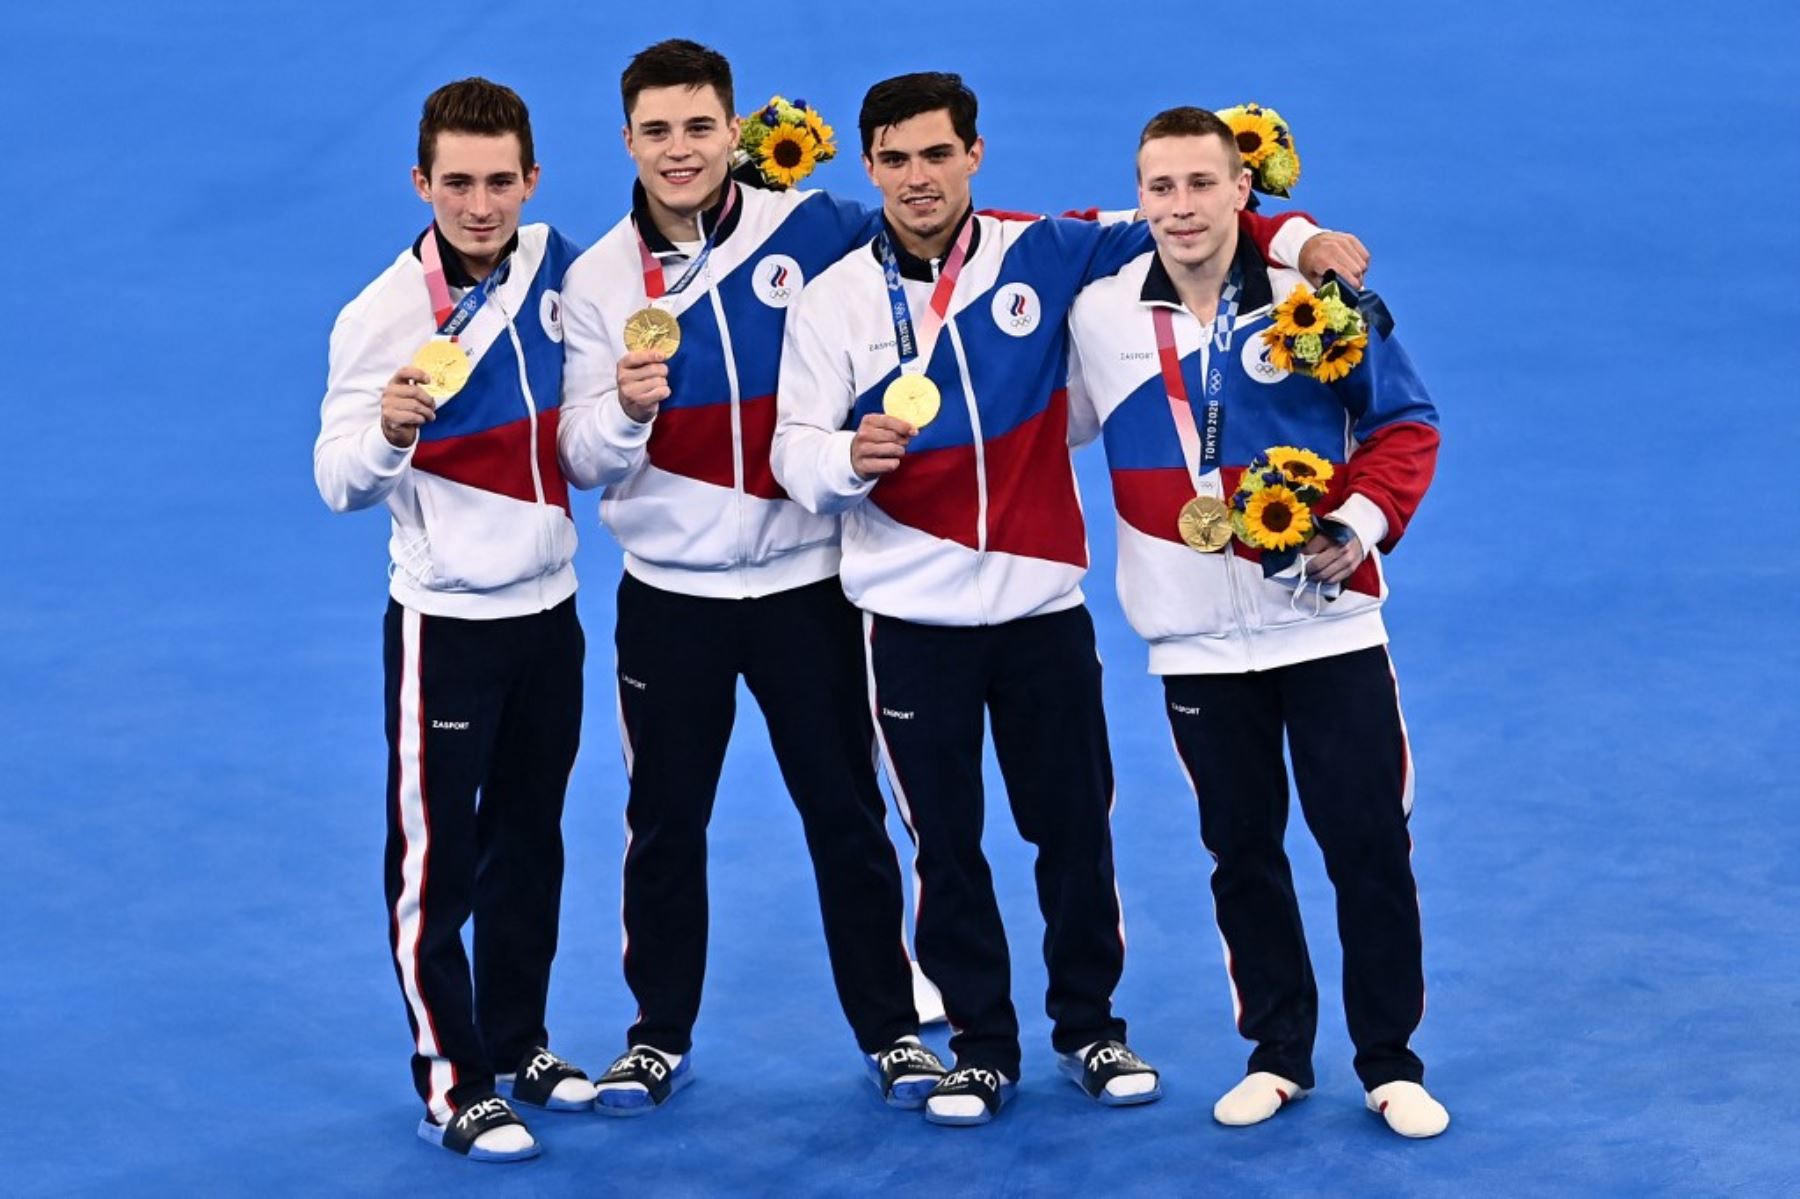 El equipos de hombres de gimnasia artística de Rusia ganó la medalla dorada